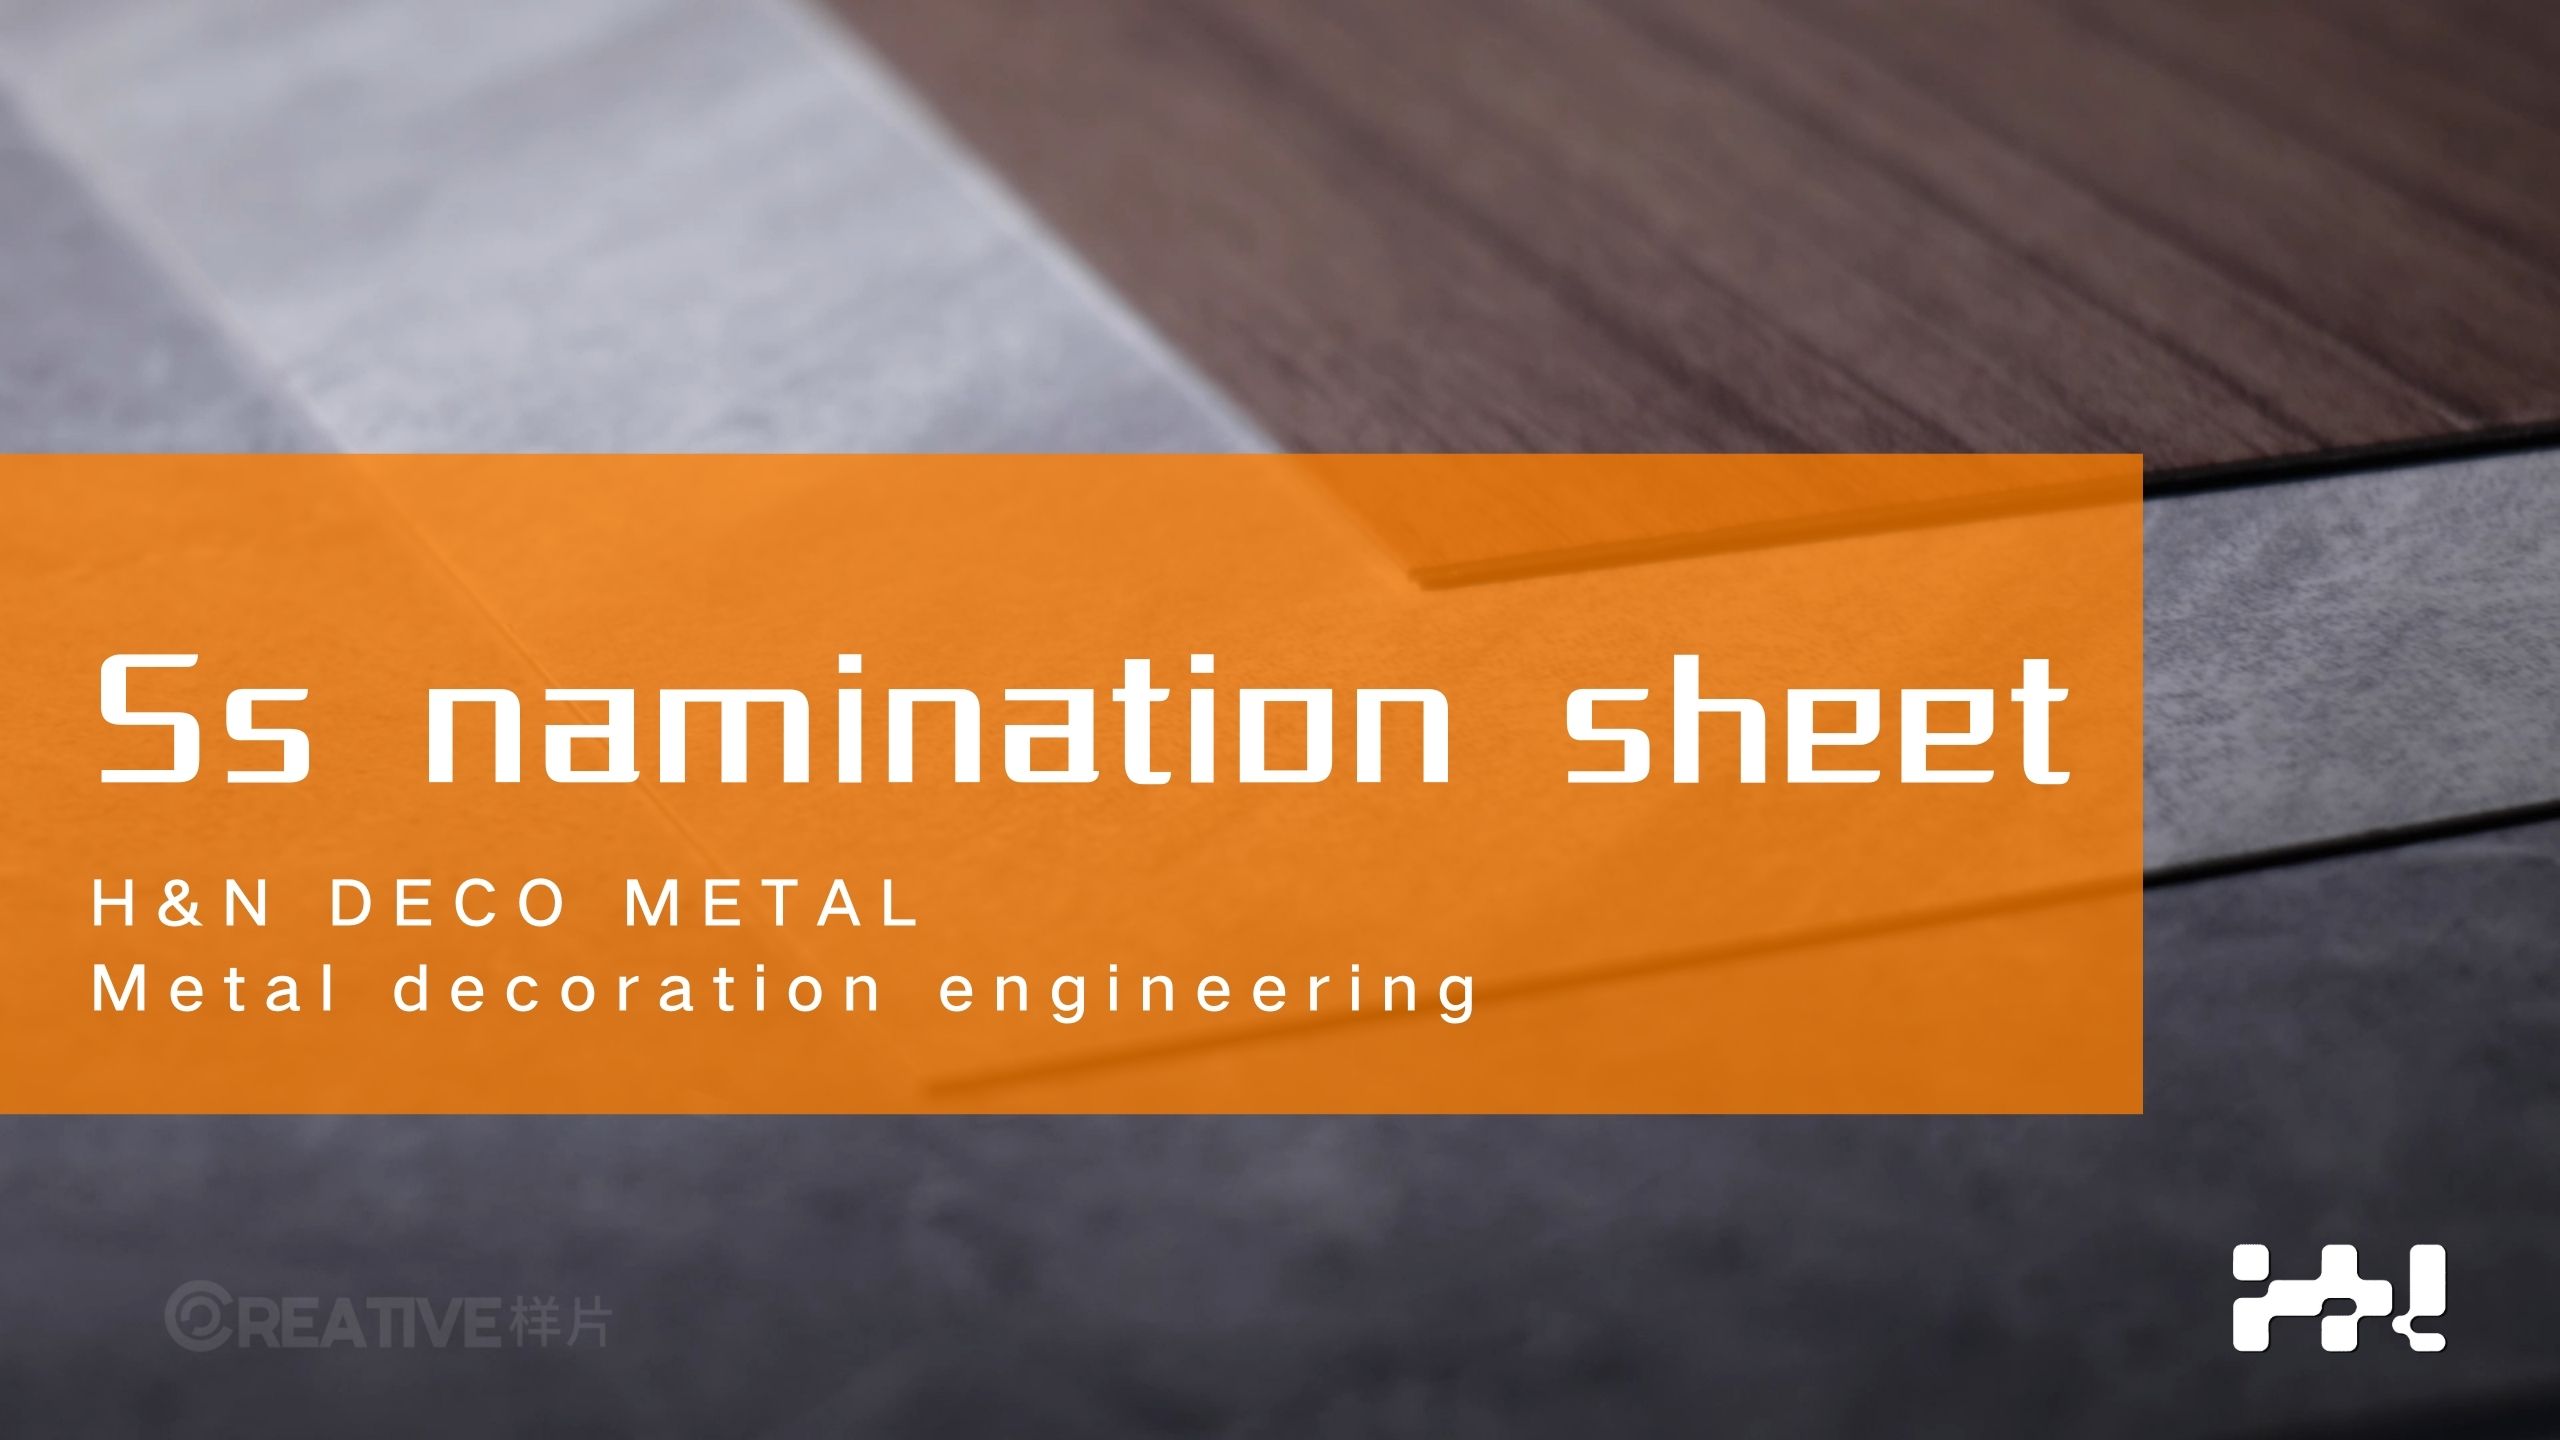 Stainless steel namination sheet